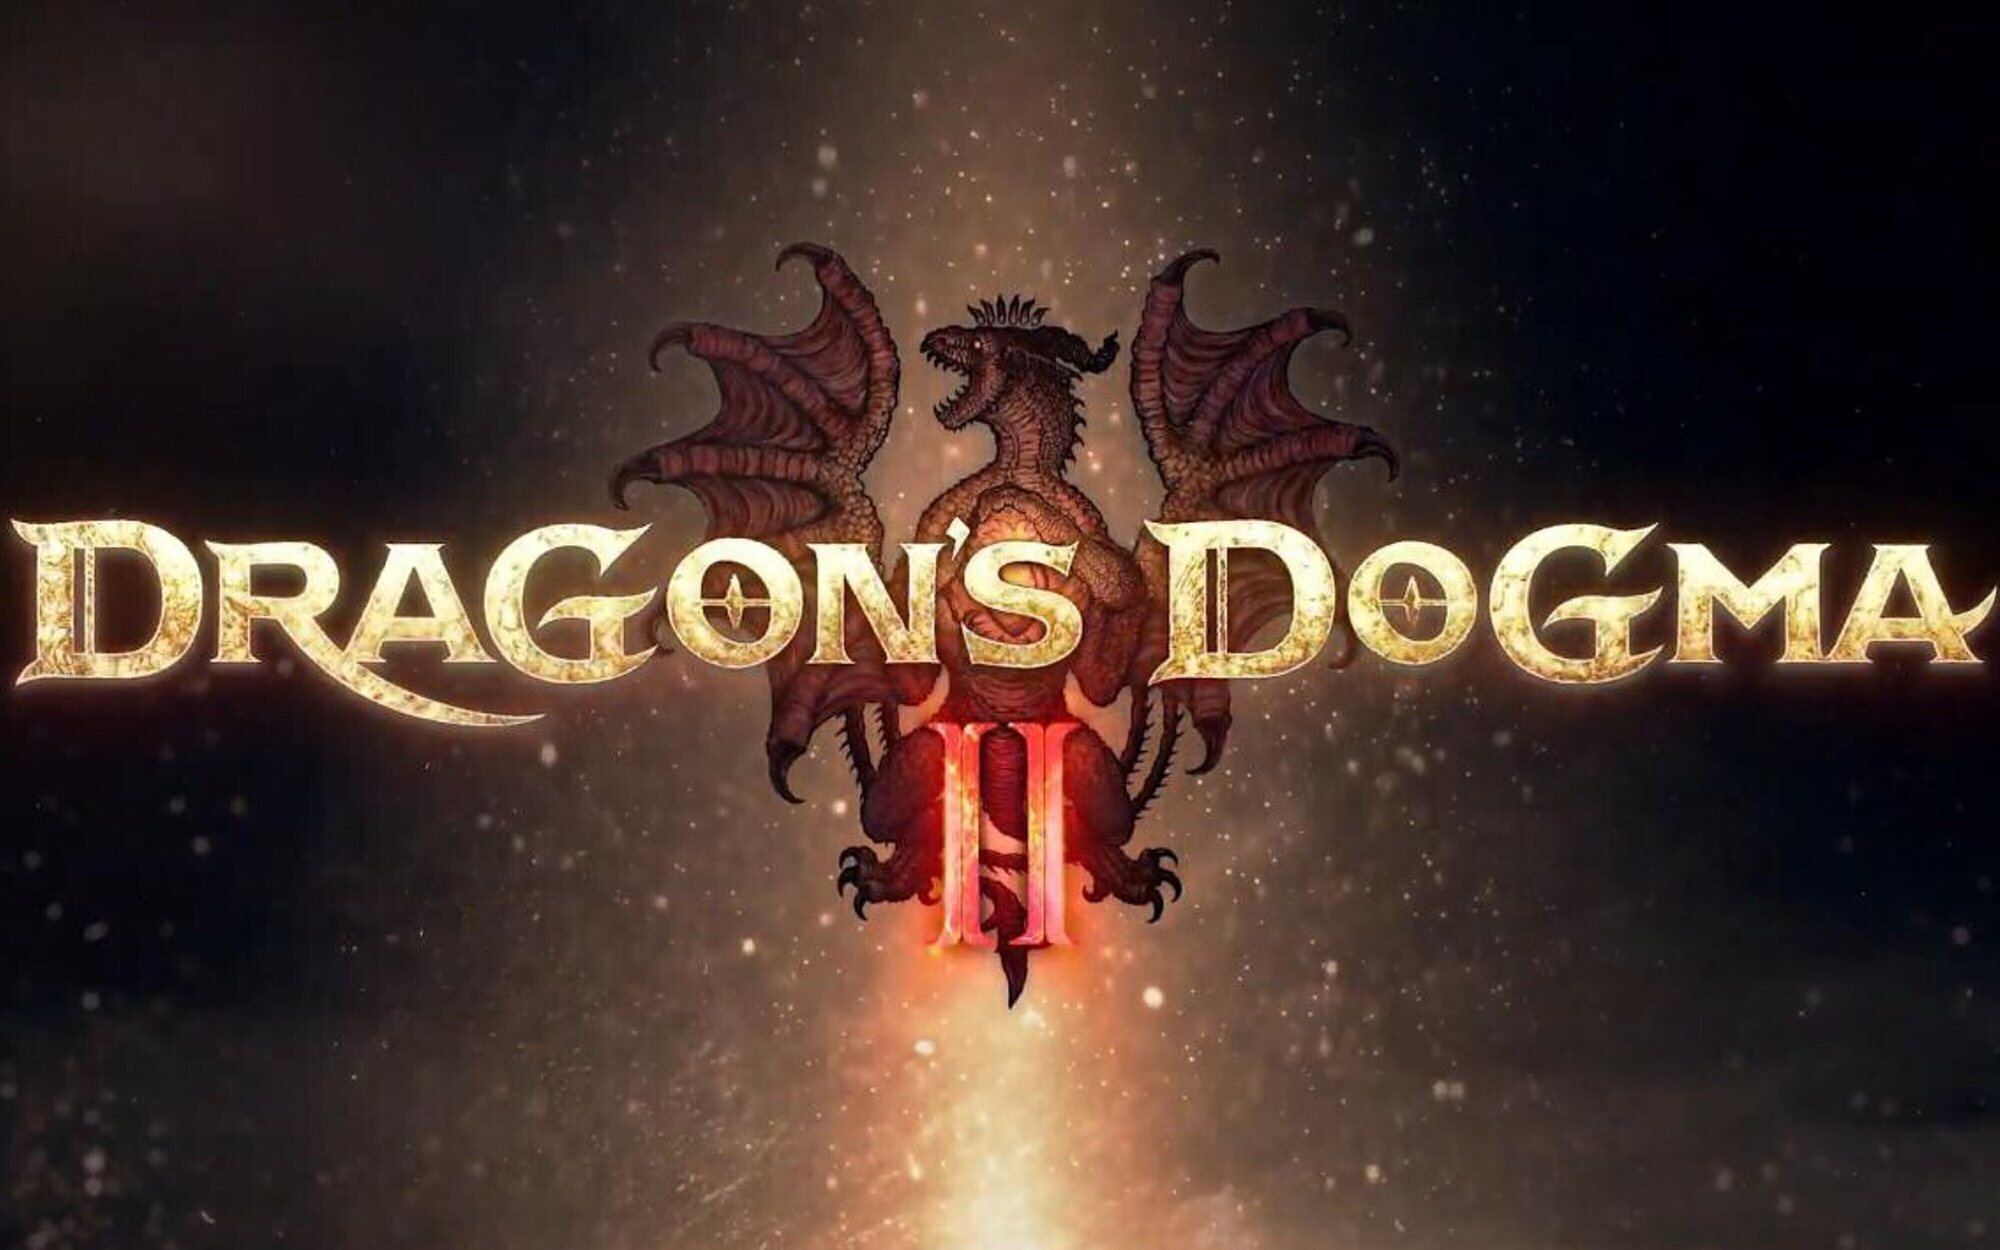 Capcom anuncia oficialmente 'Dragon's Dogma 2', que será desarrollado con el RE Engine